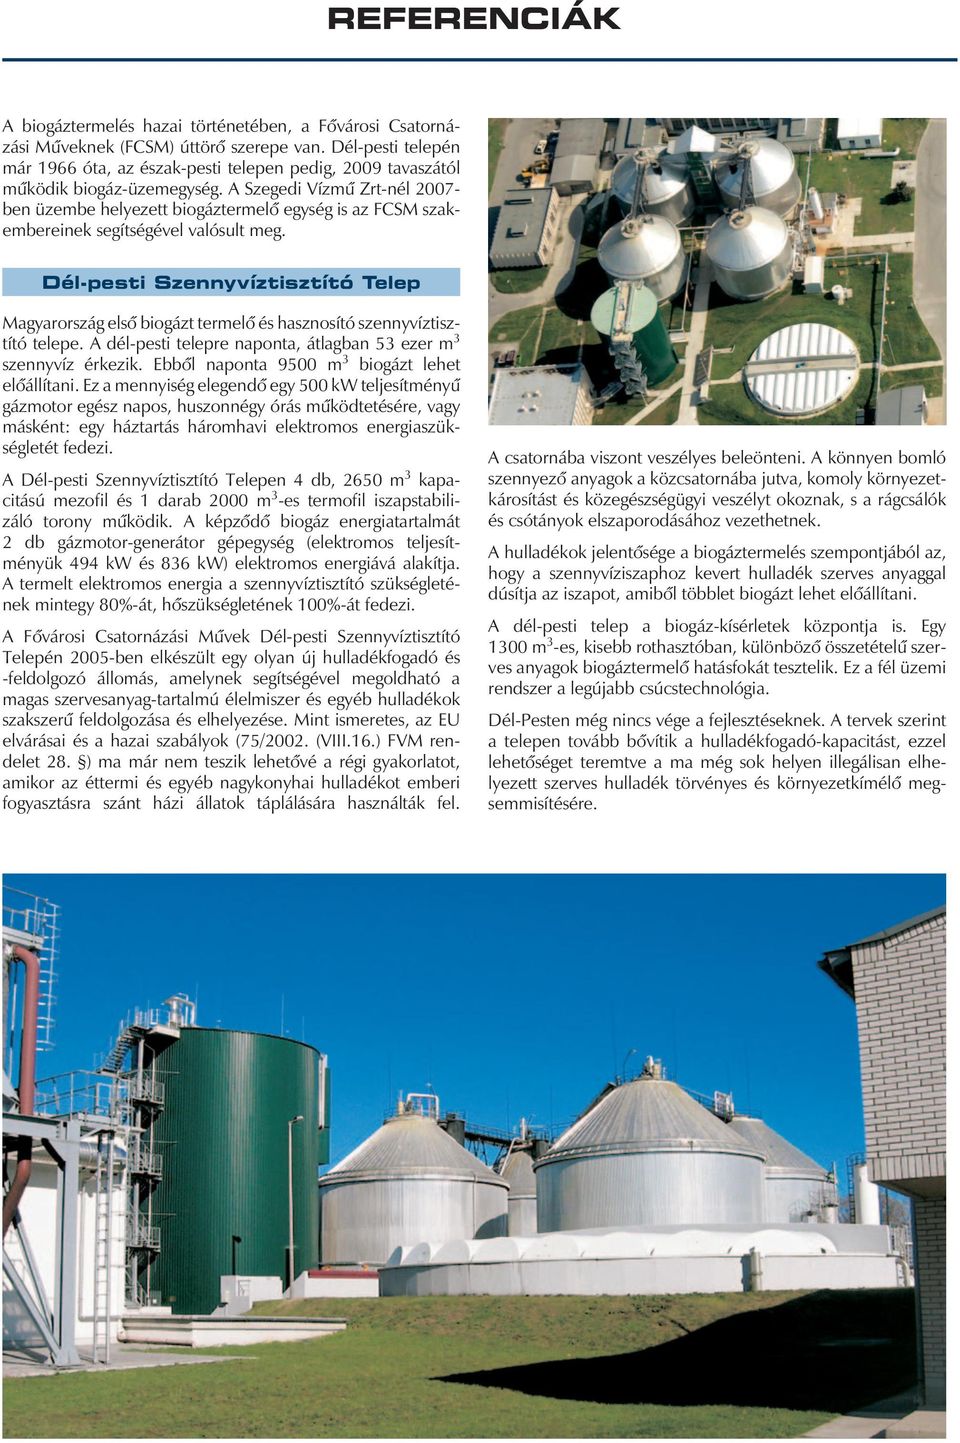 A Szegedi Vízmû Zrt-nél 2007- ben üzembe helyezett biogáztermelô egység is az FCSM szakembereinek segítségével valósult meg.